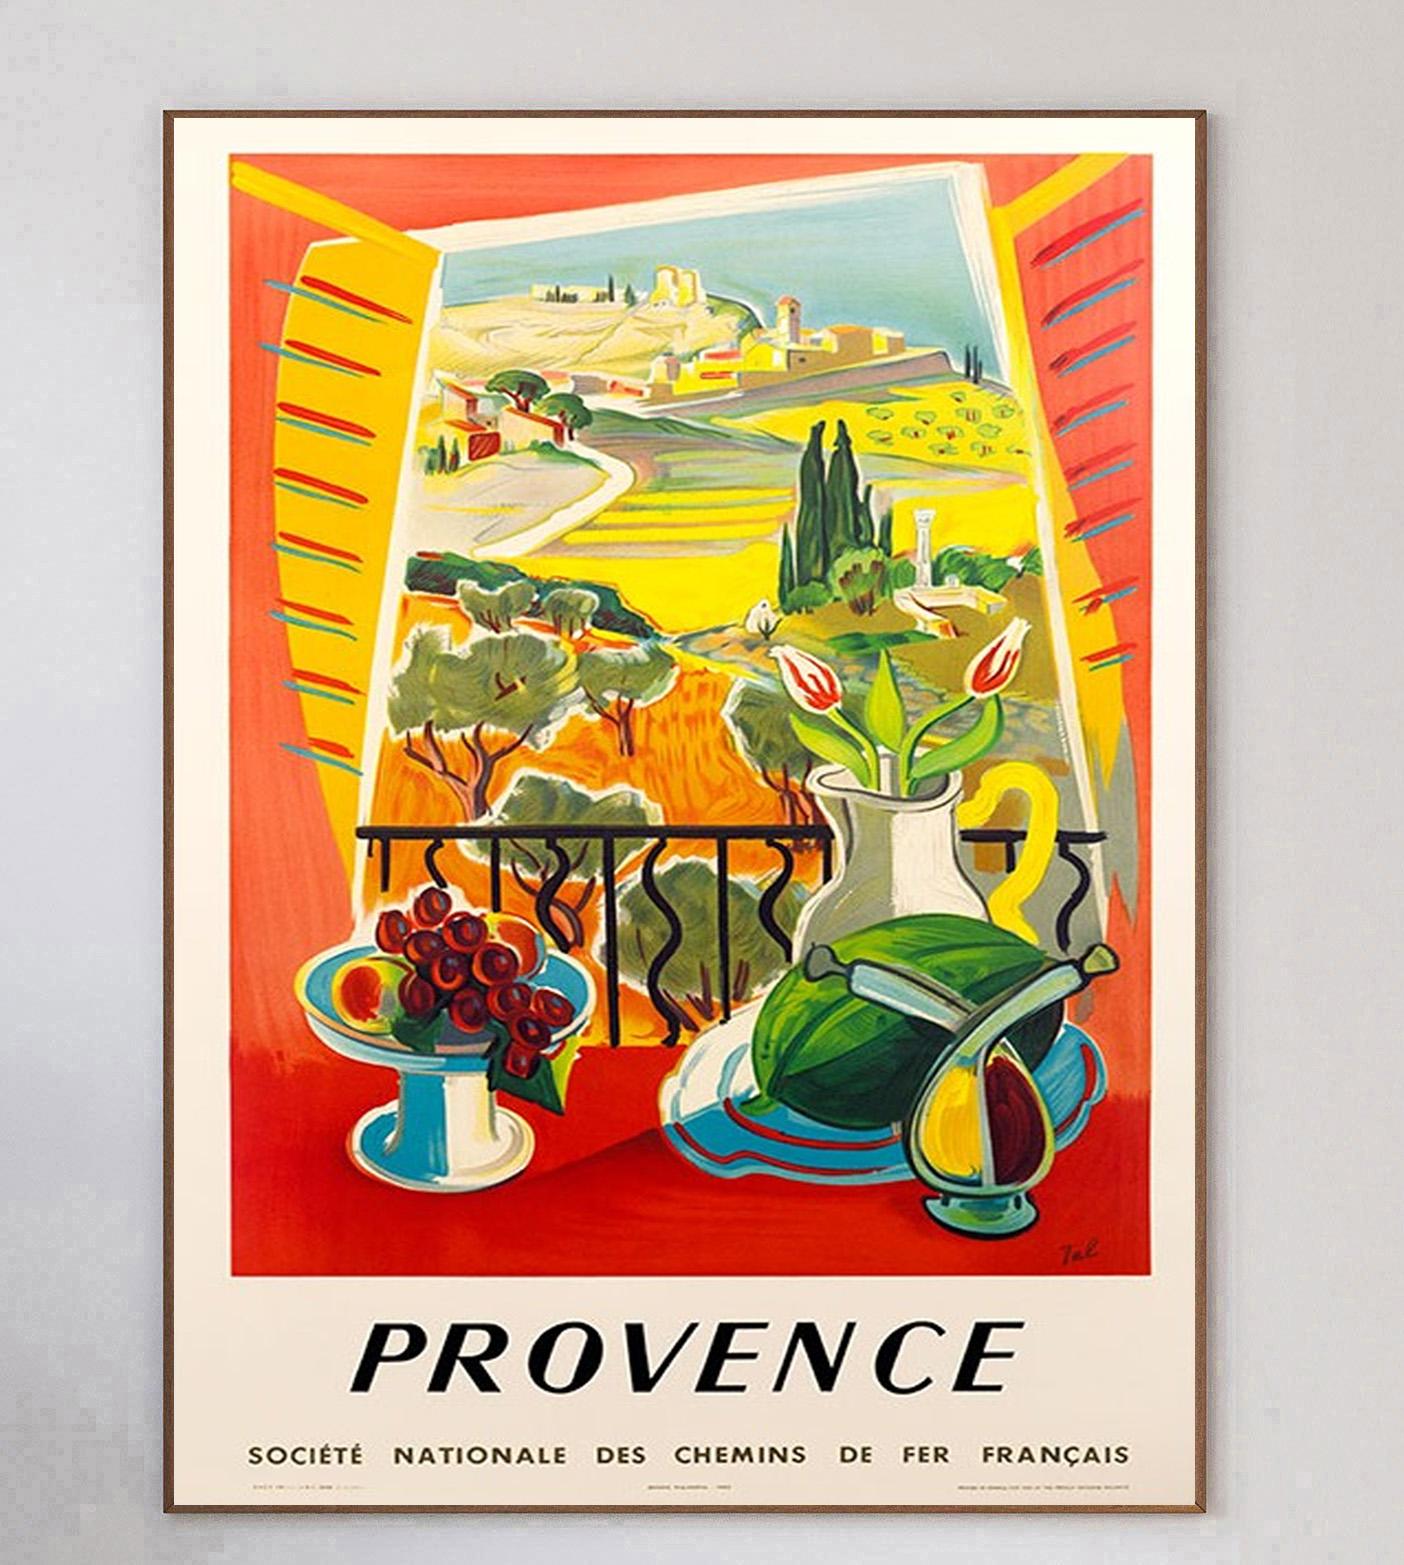 Charmante affiche de 1970 pour les chemins de fer français SNCF promouvant leurs itinéraires vers la Provence dans le sud-est de la France. 

Cette œuvre vibrante, qui représente une scène ensoleillée à travers une fenêtre ouverte, a été conçue par